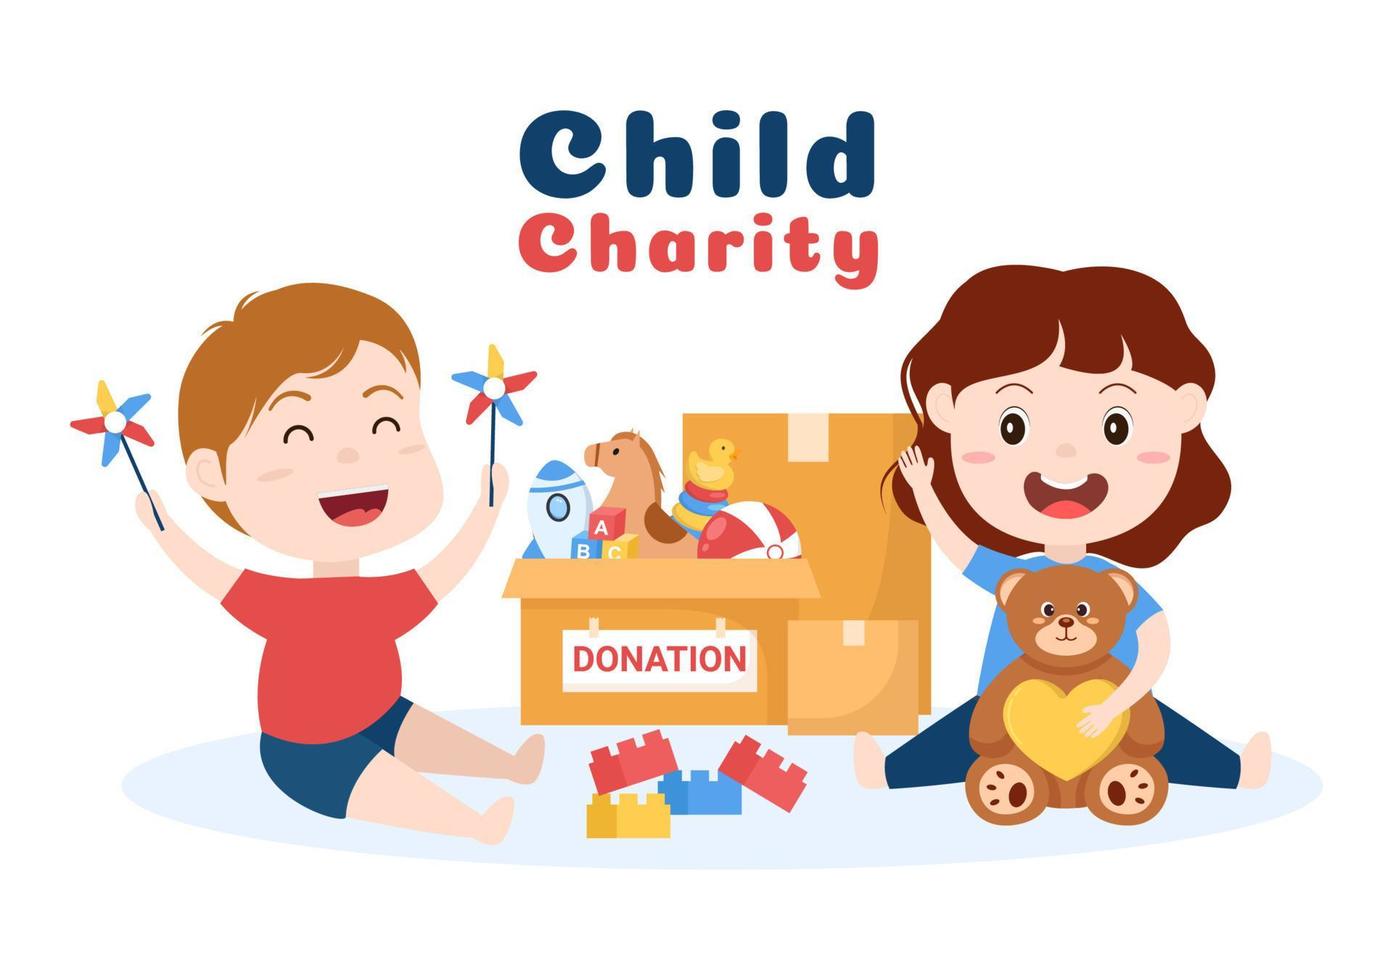 caja de donación de cartón que contiene juguetes para niños, atención social, voluntariado y caridad en dibujos animados dibujados a mano ilustración plana vector